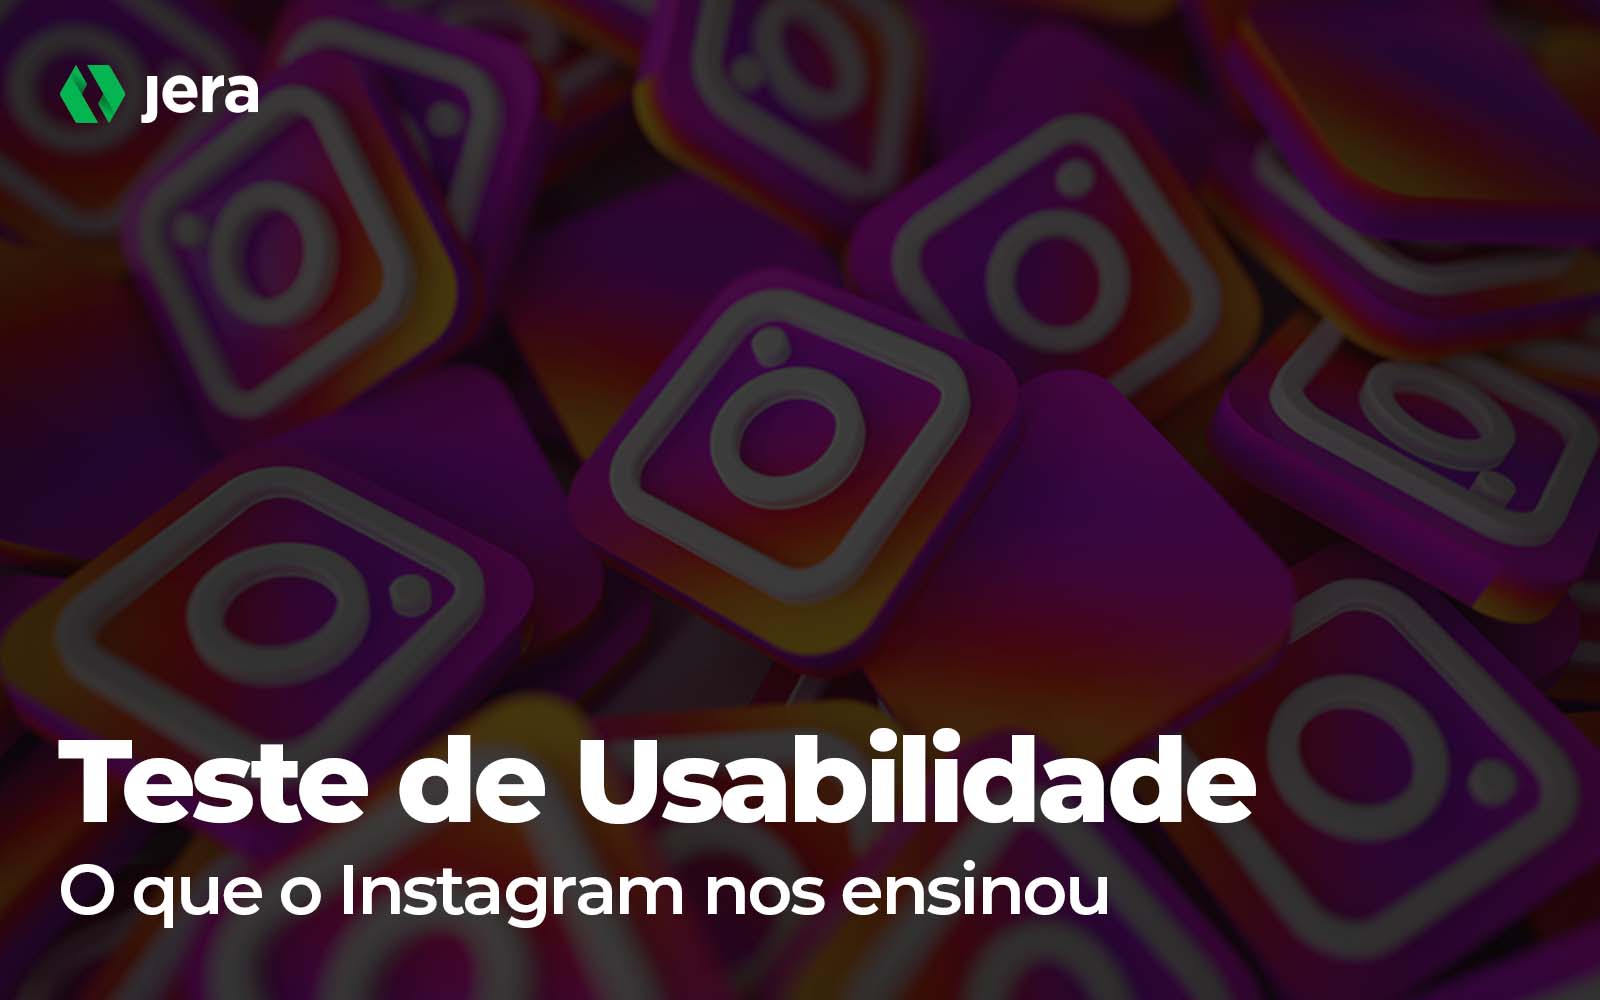 O que o Instagram nos ensinou sobre teste de usabilidade?